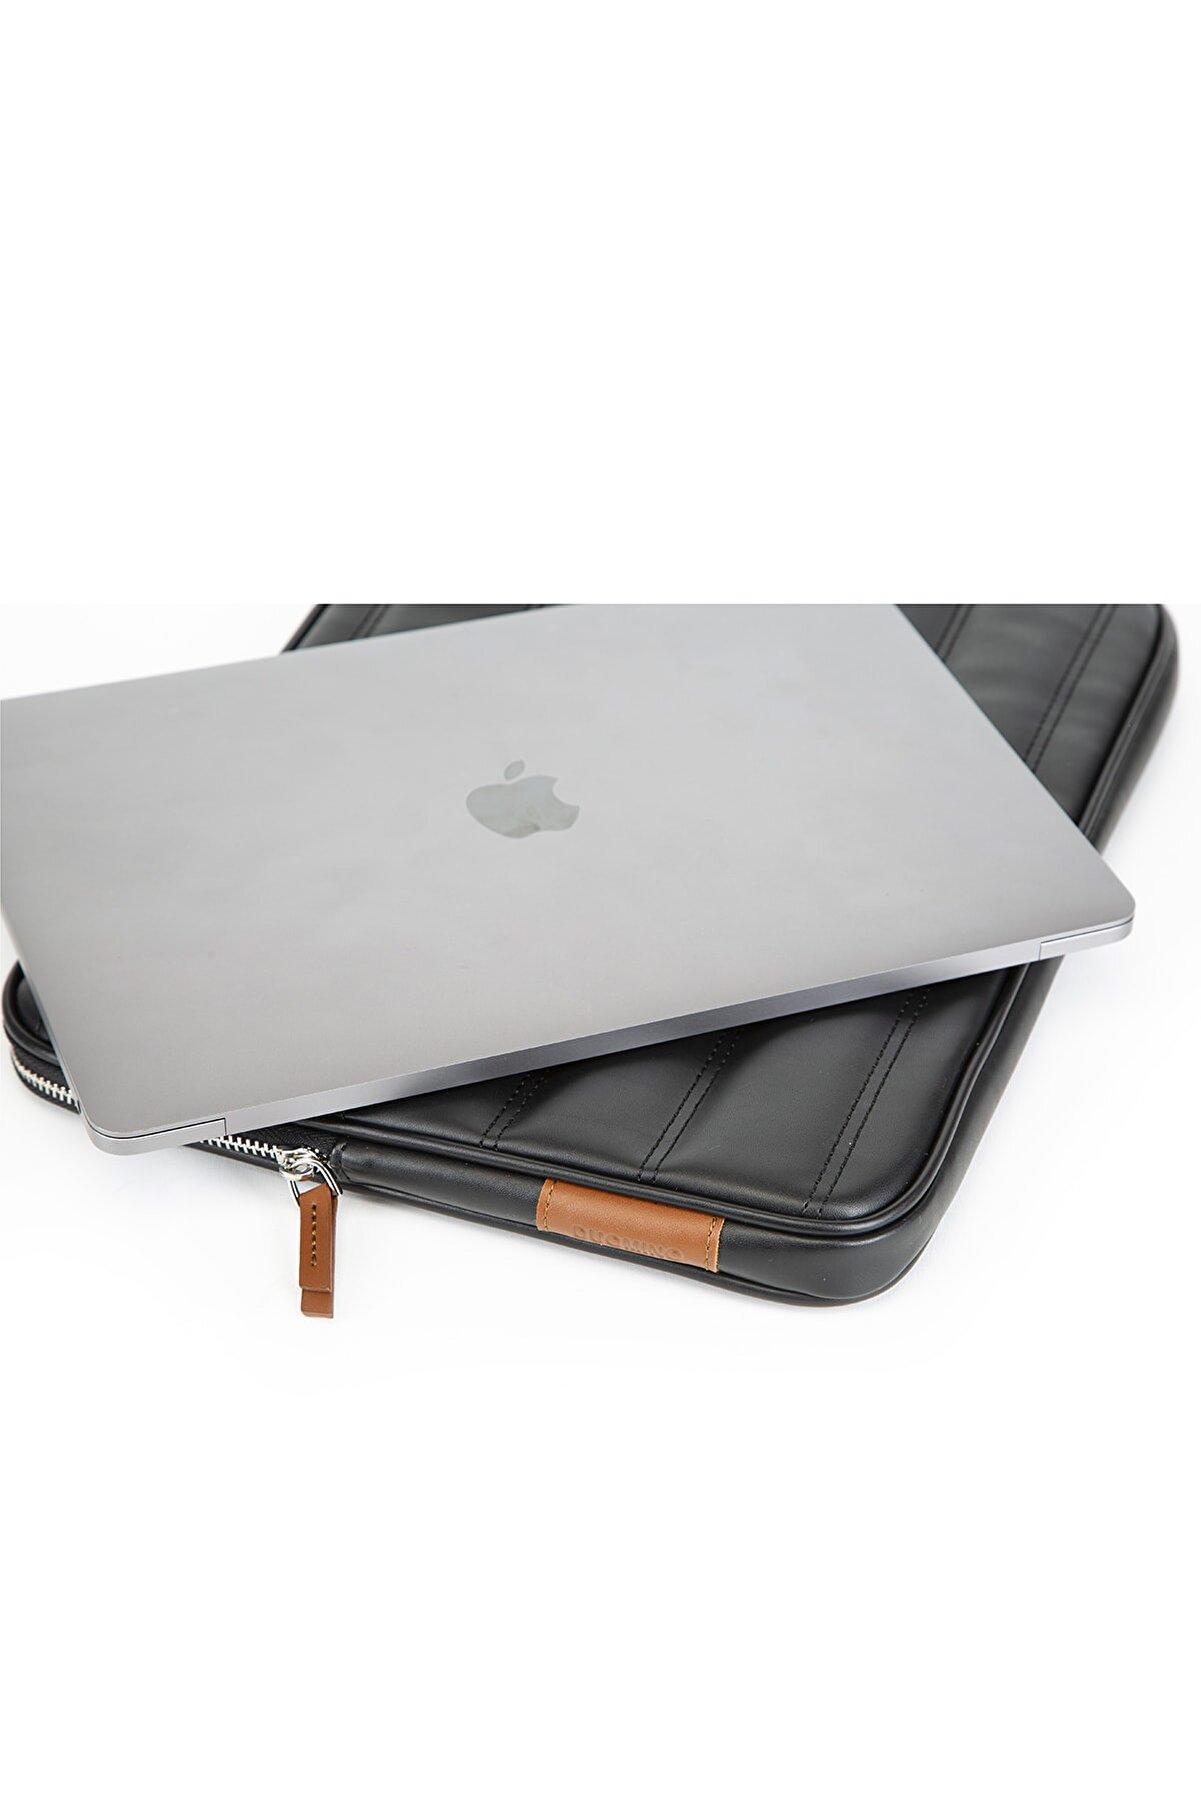 DUOMİNO Siyah Su Geçirmez 13.3'' Macbook Laptop Çantası Ve Ipad Tablet Kılıfı / Evrak Çantası